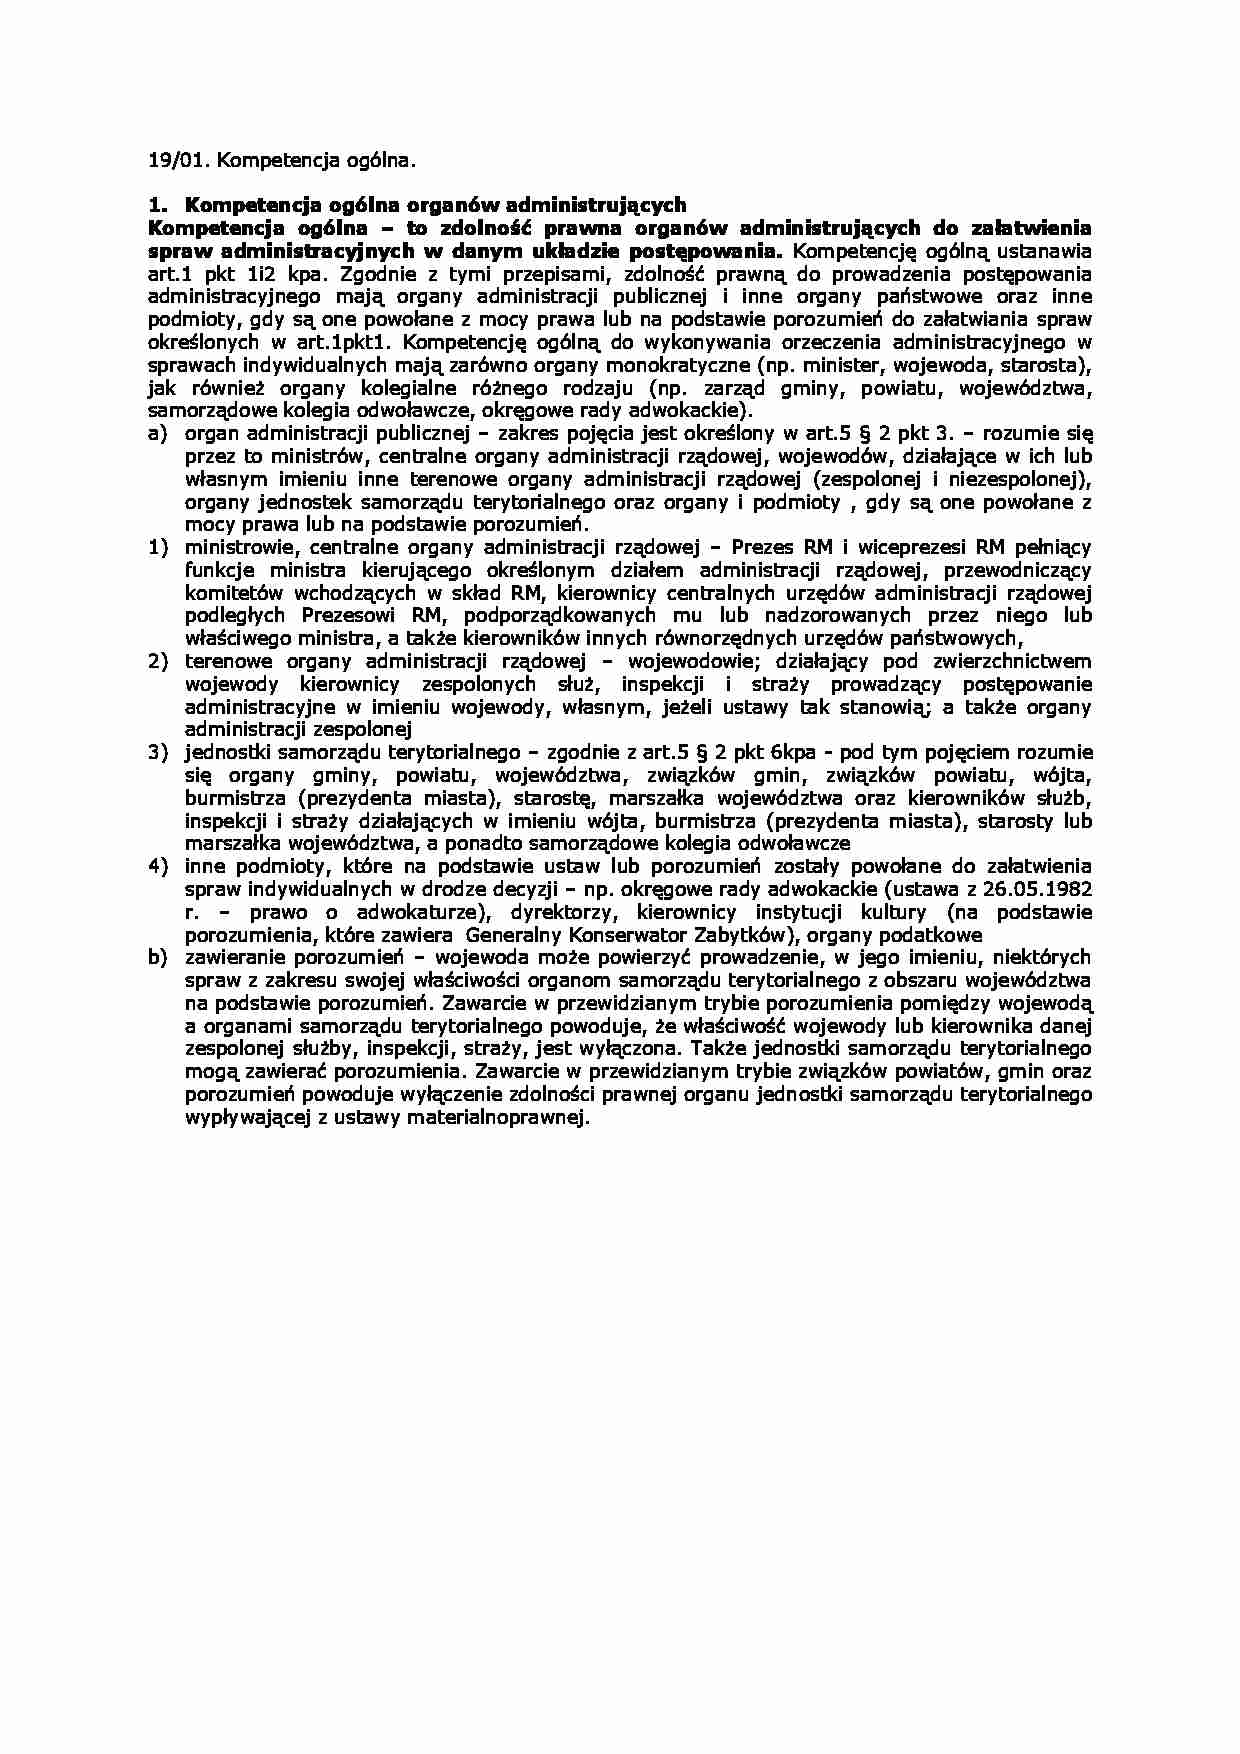 Kompetencja ogólna-opracowanie - strona 1